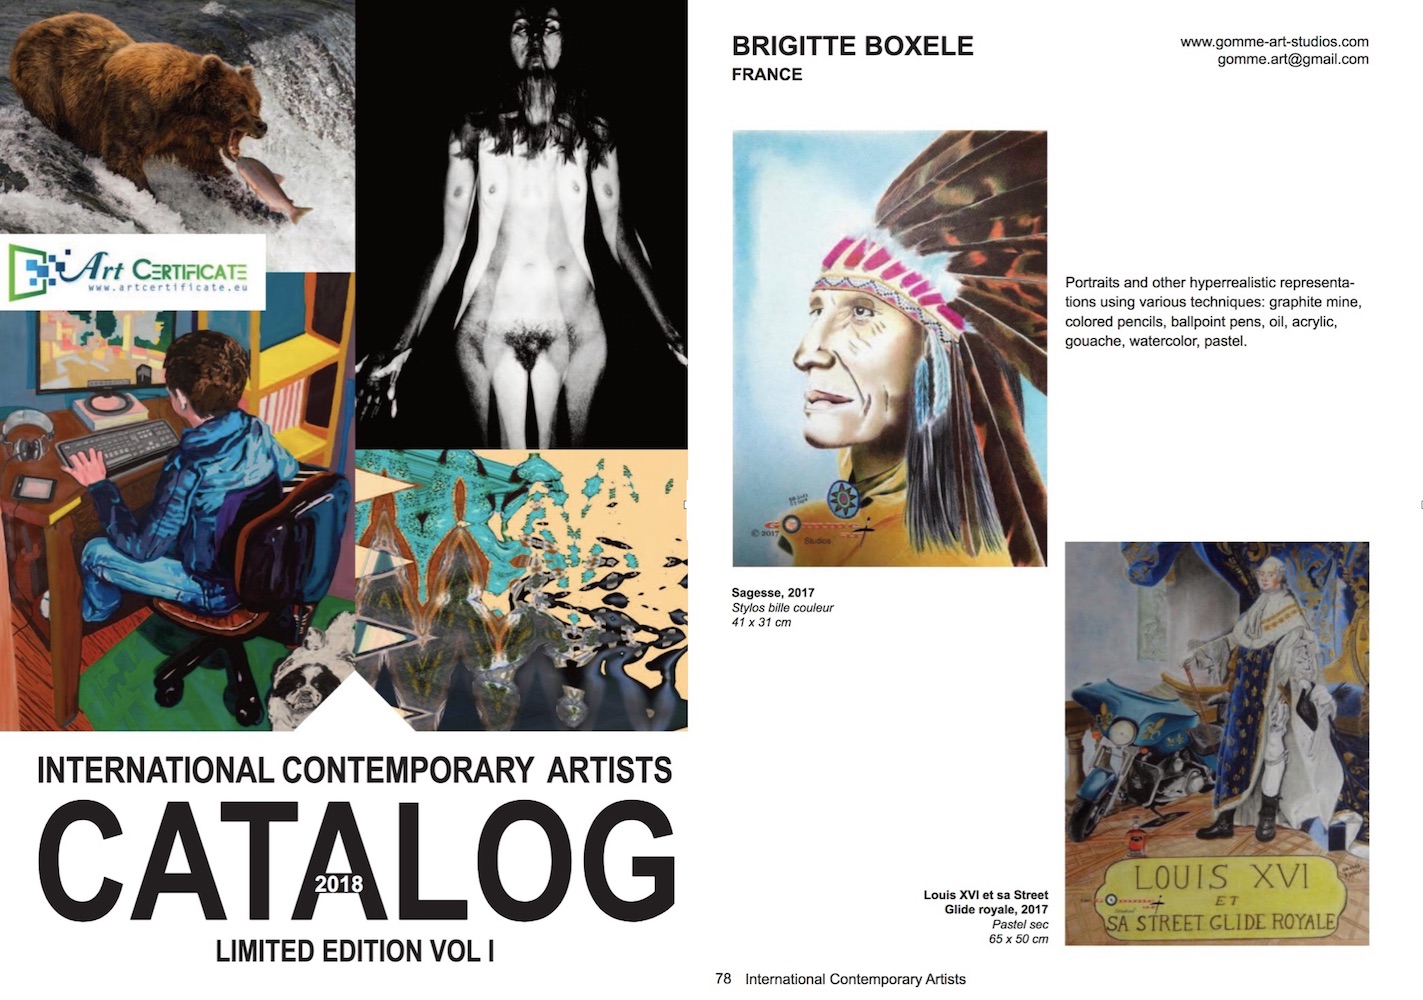 Catalogue d'artistes contemporains Artcertificate 2018 - Présentation de l'artiste Brigitte BOXELÉ (BB)